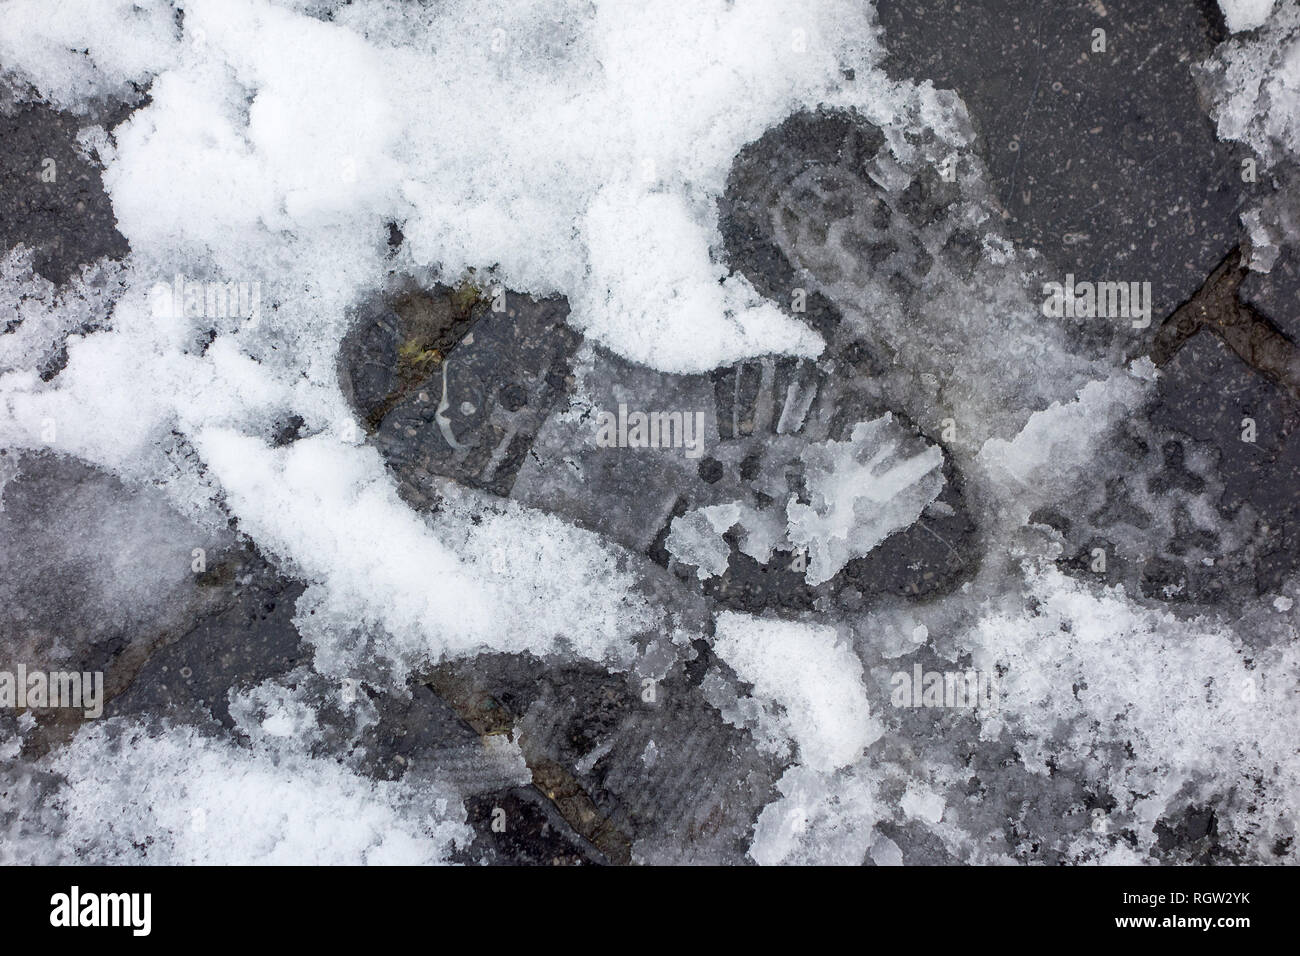 Footprints of pedestrian in wet snow / sleet on slippery pavement / dangerous sidewalk in winter Stock Photo